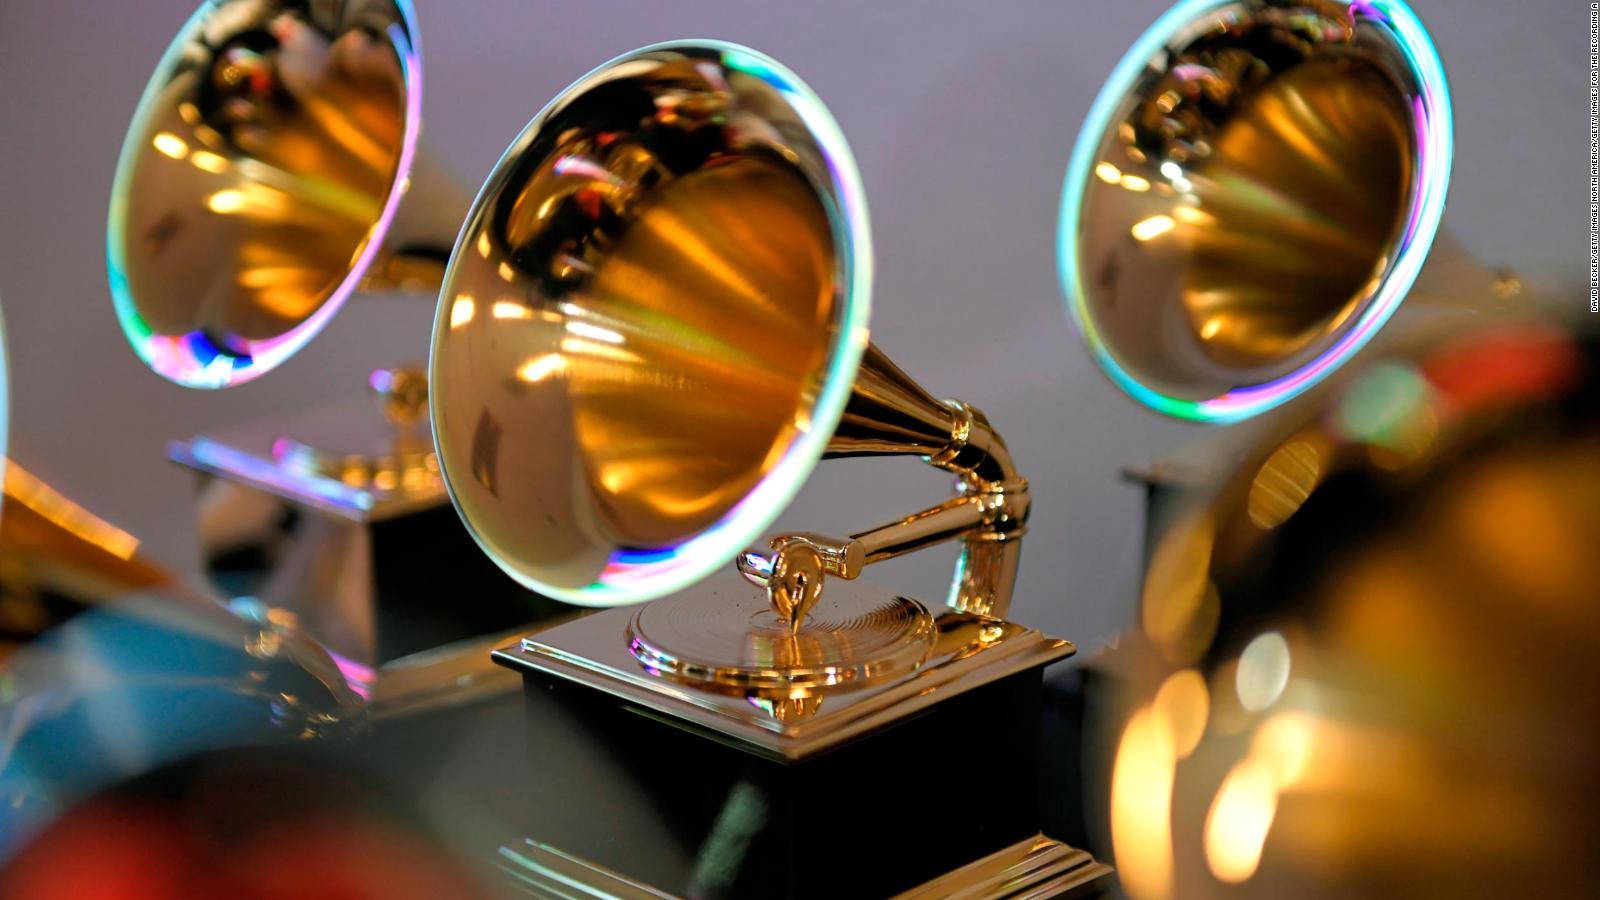 Los 5 artistas que más premios Grammy han ganado en la historia